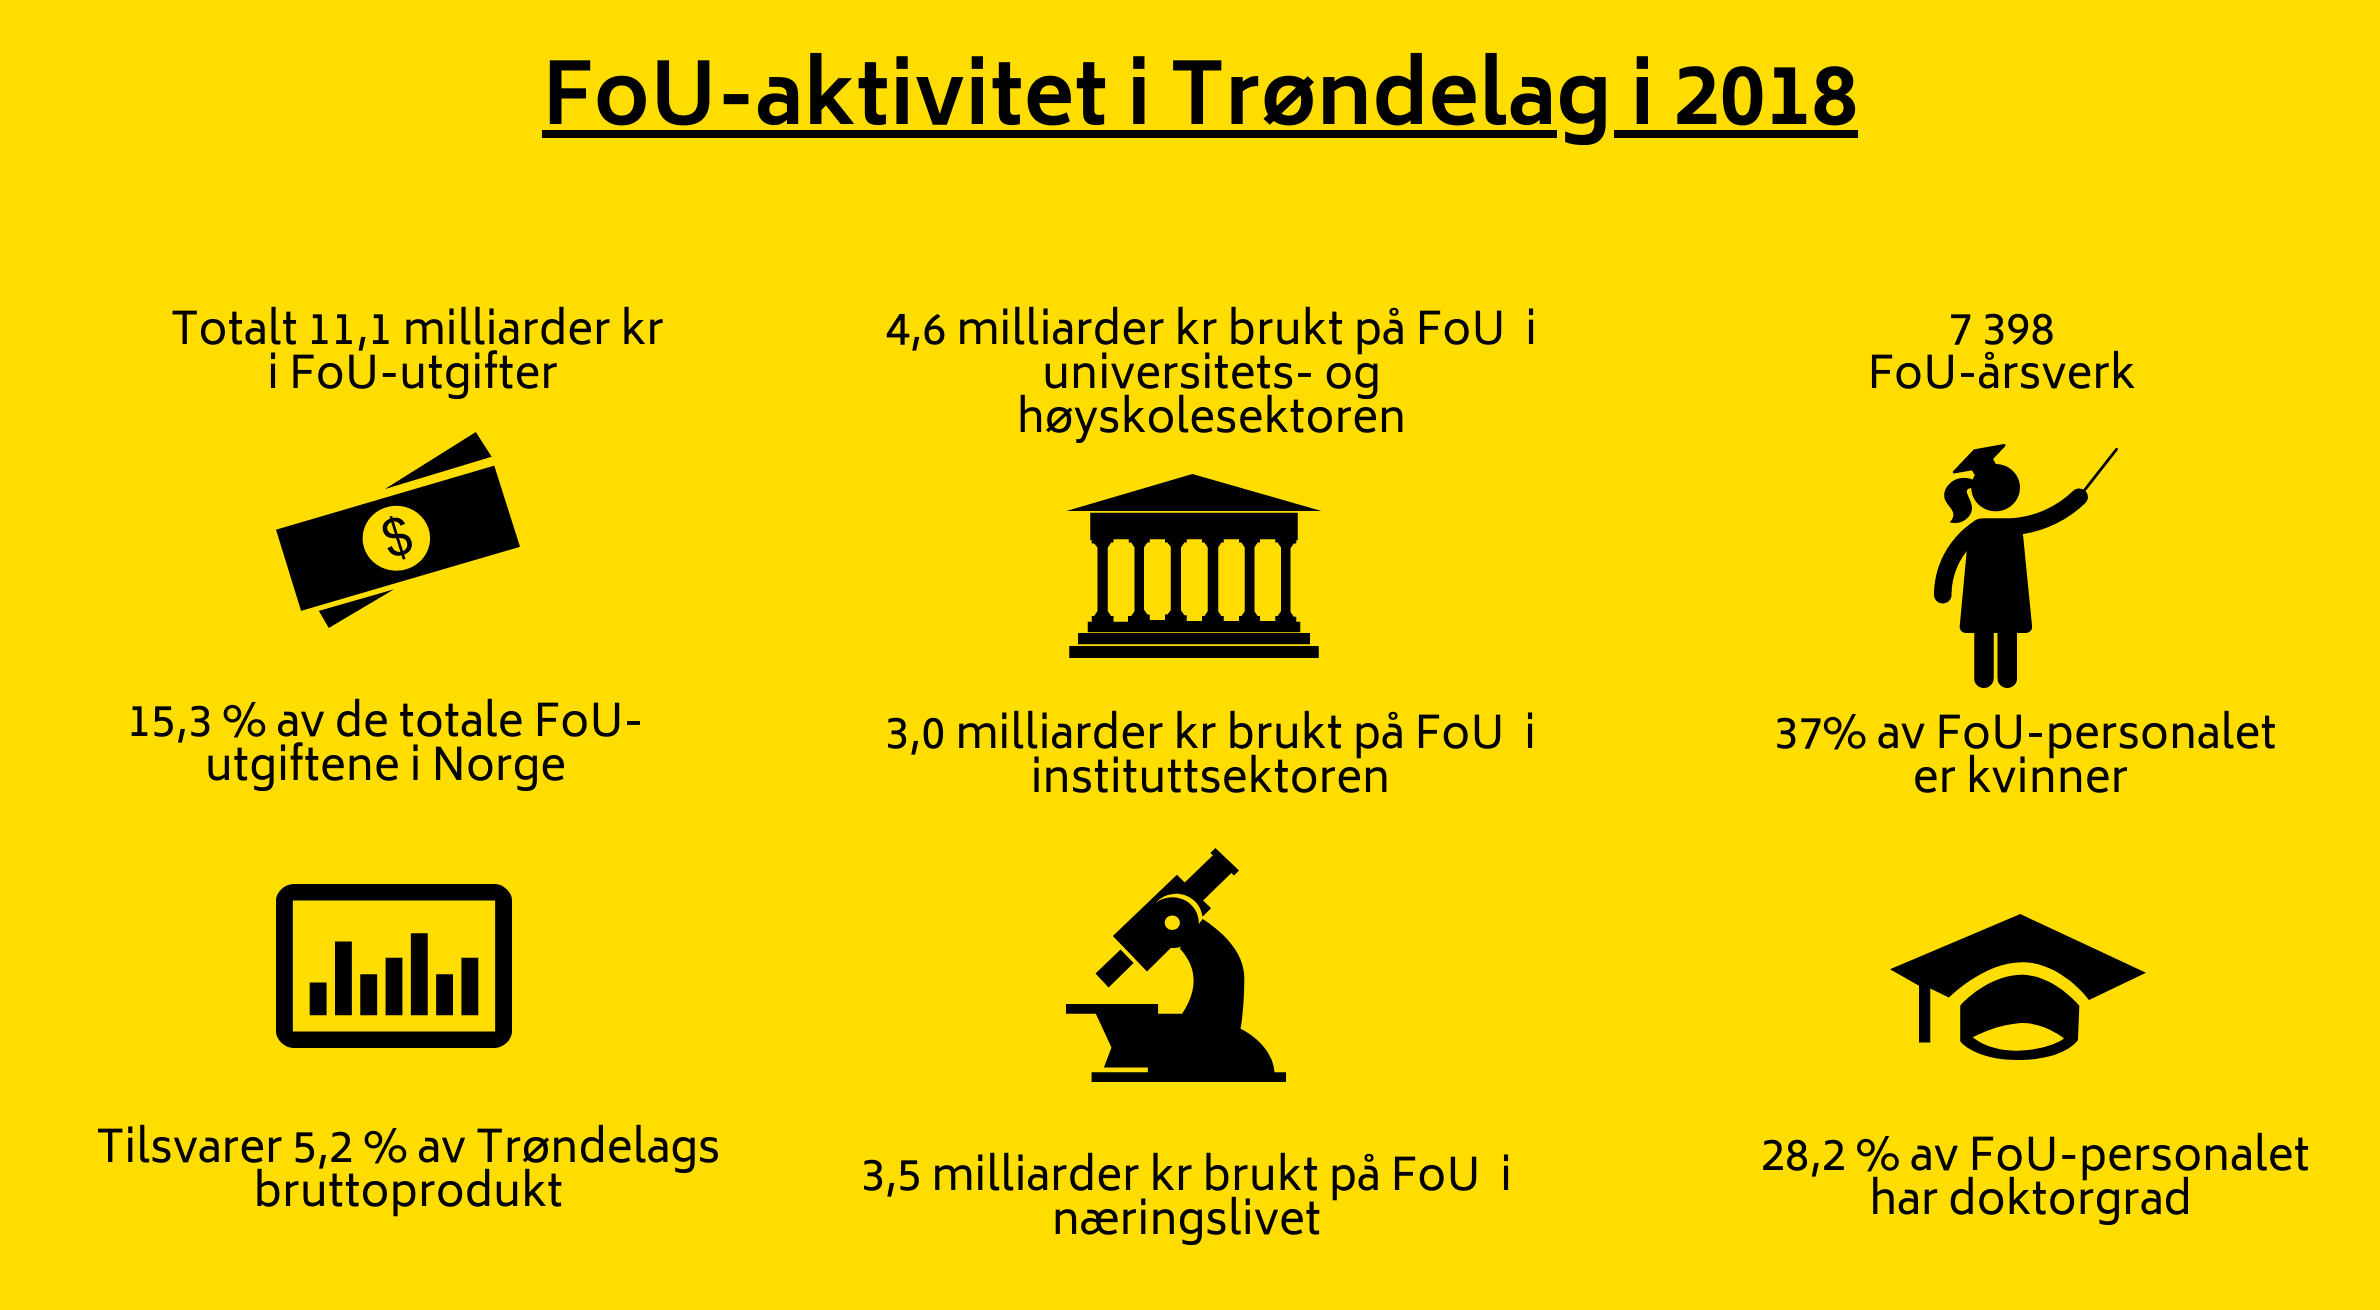 FoU aktivitet i Trøndelag i 2018